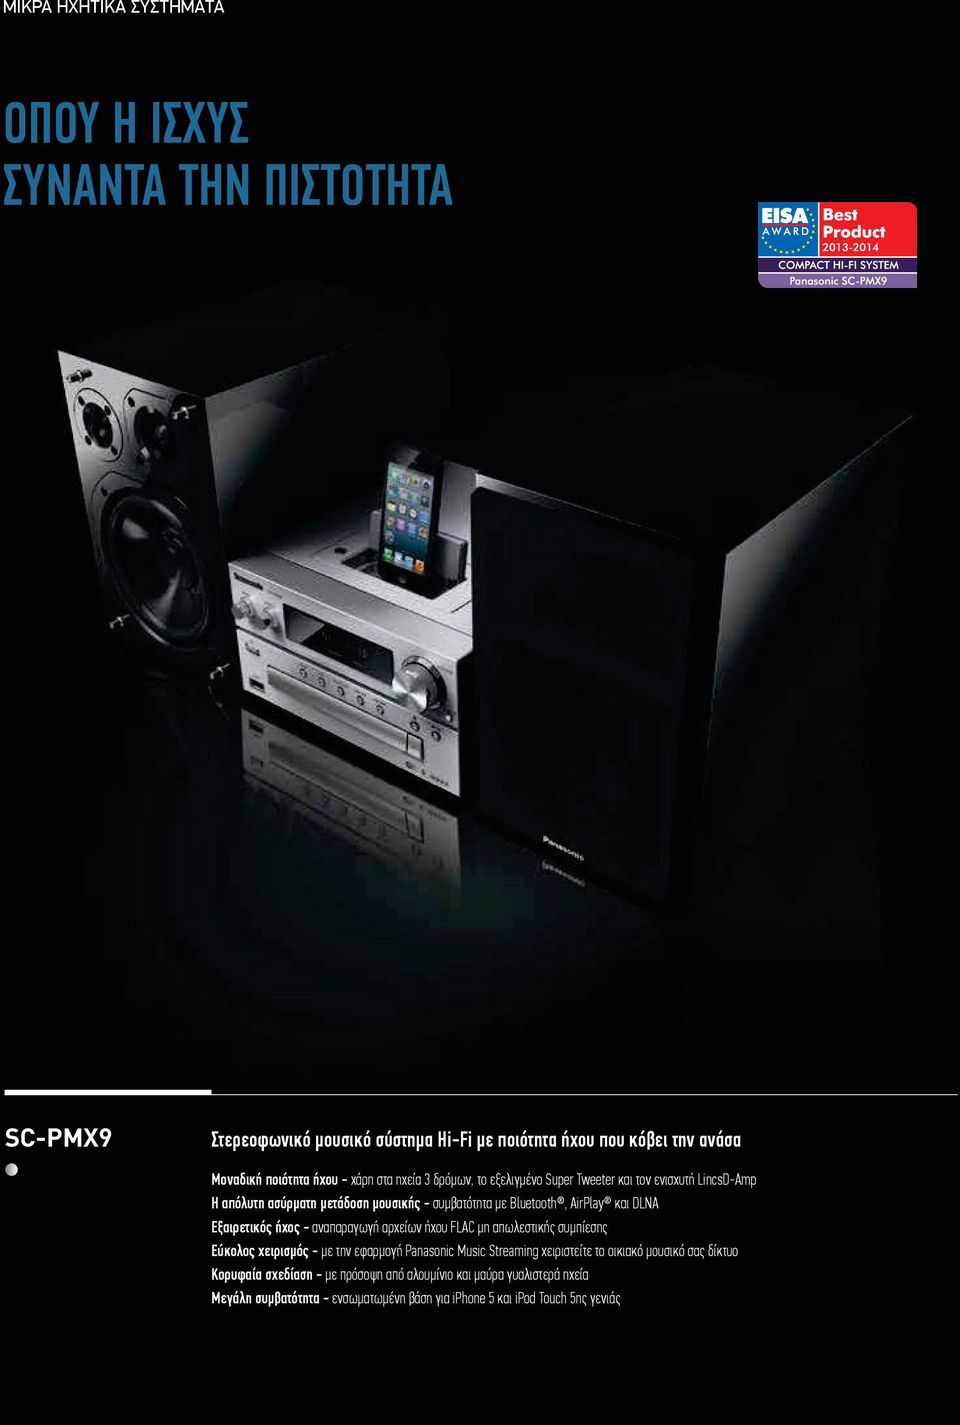 Εύκολος χειρισμός - με την εφαρμογή Panasonic Music Streaming χειριστείτε το οικιακό μουσικό σας δίκτυο (μόνο το SC-PMX7) Πλούσια μπάσα - από το woofer 14 εκ.